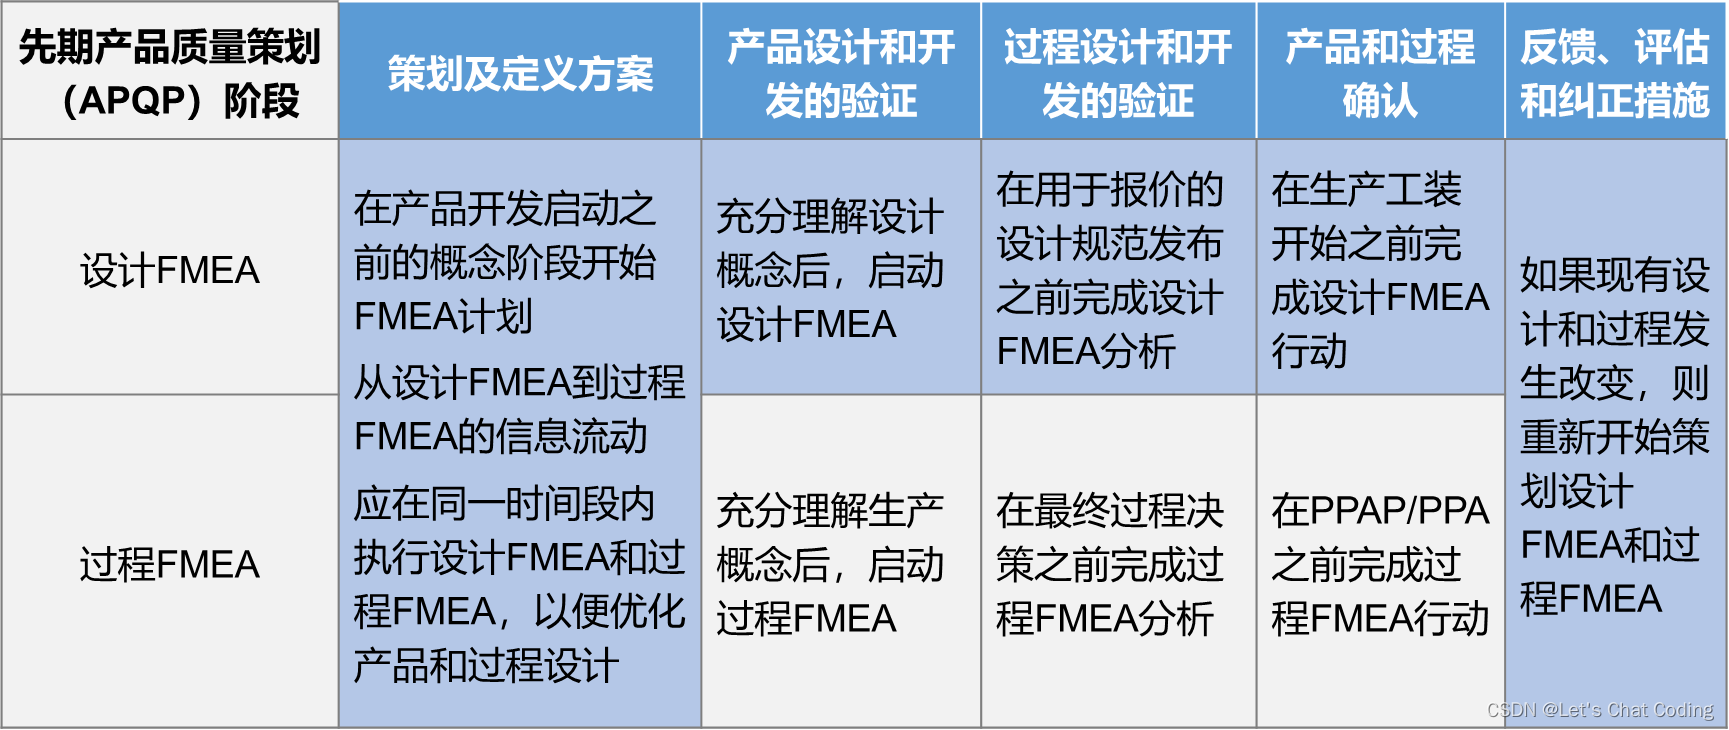 图1.5-1先期产品质量策划（APQP)阶段的FMEA时间安排